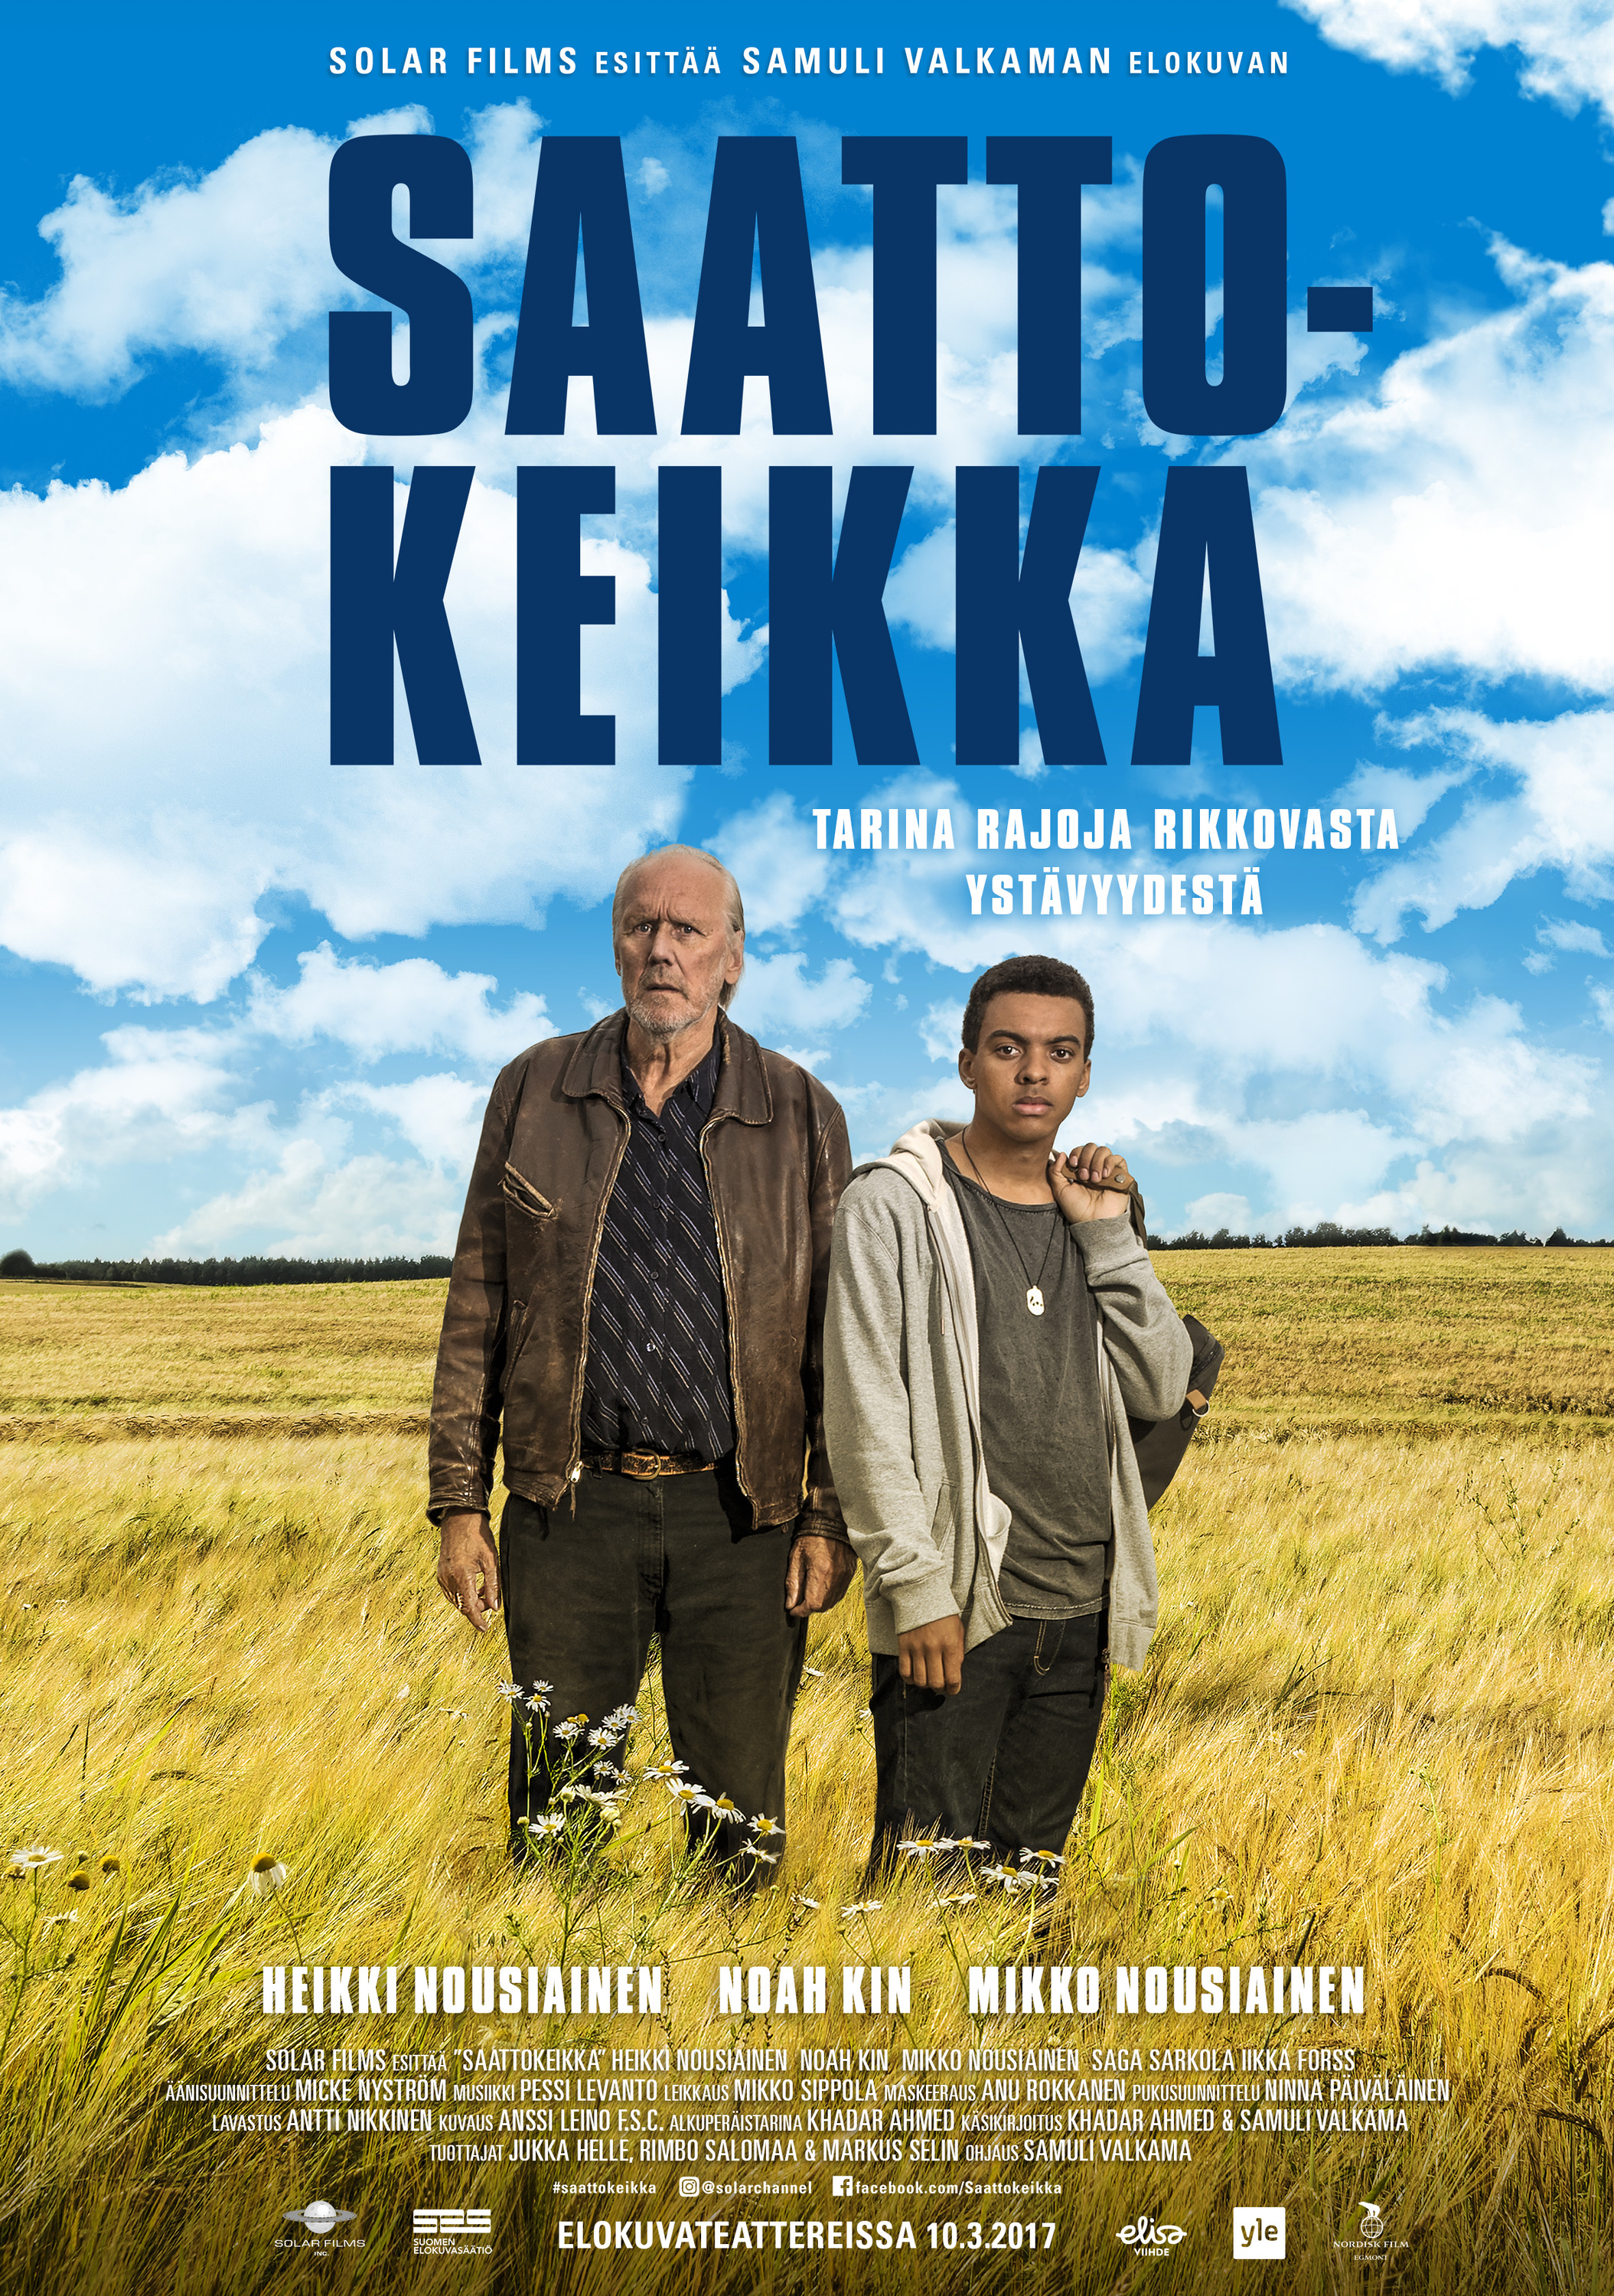 Mega Sized Movie Poster Image for Saattokeikka 